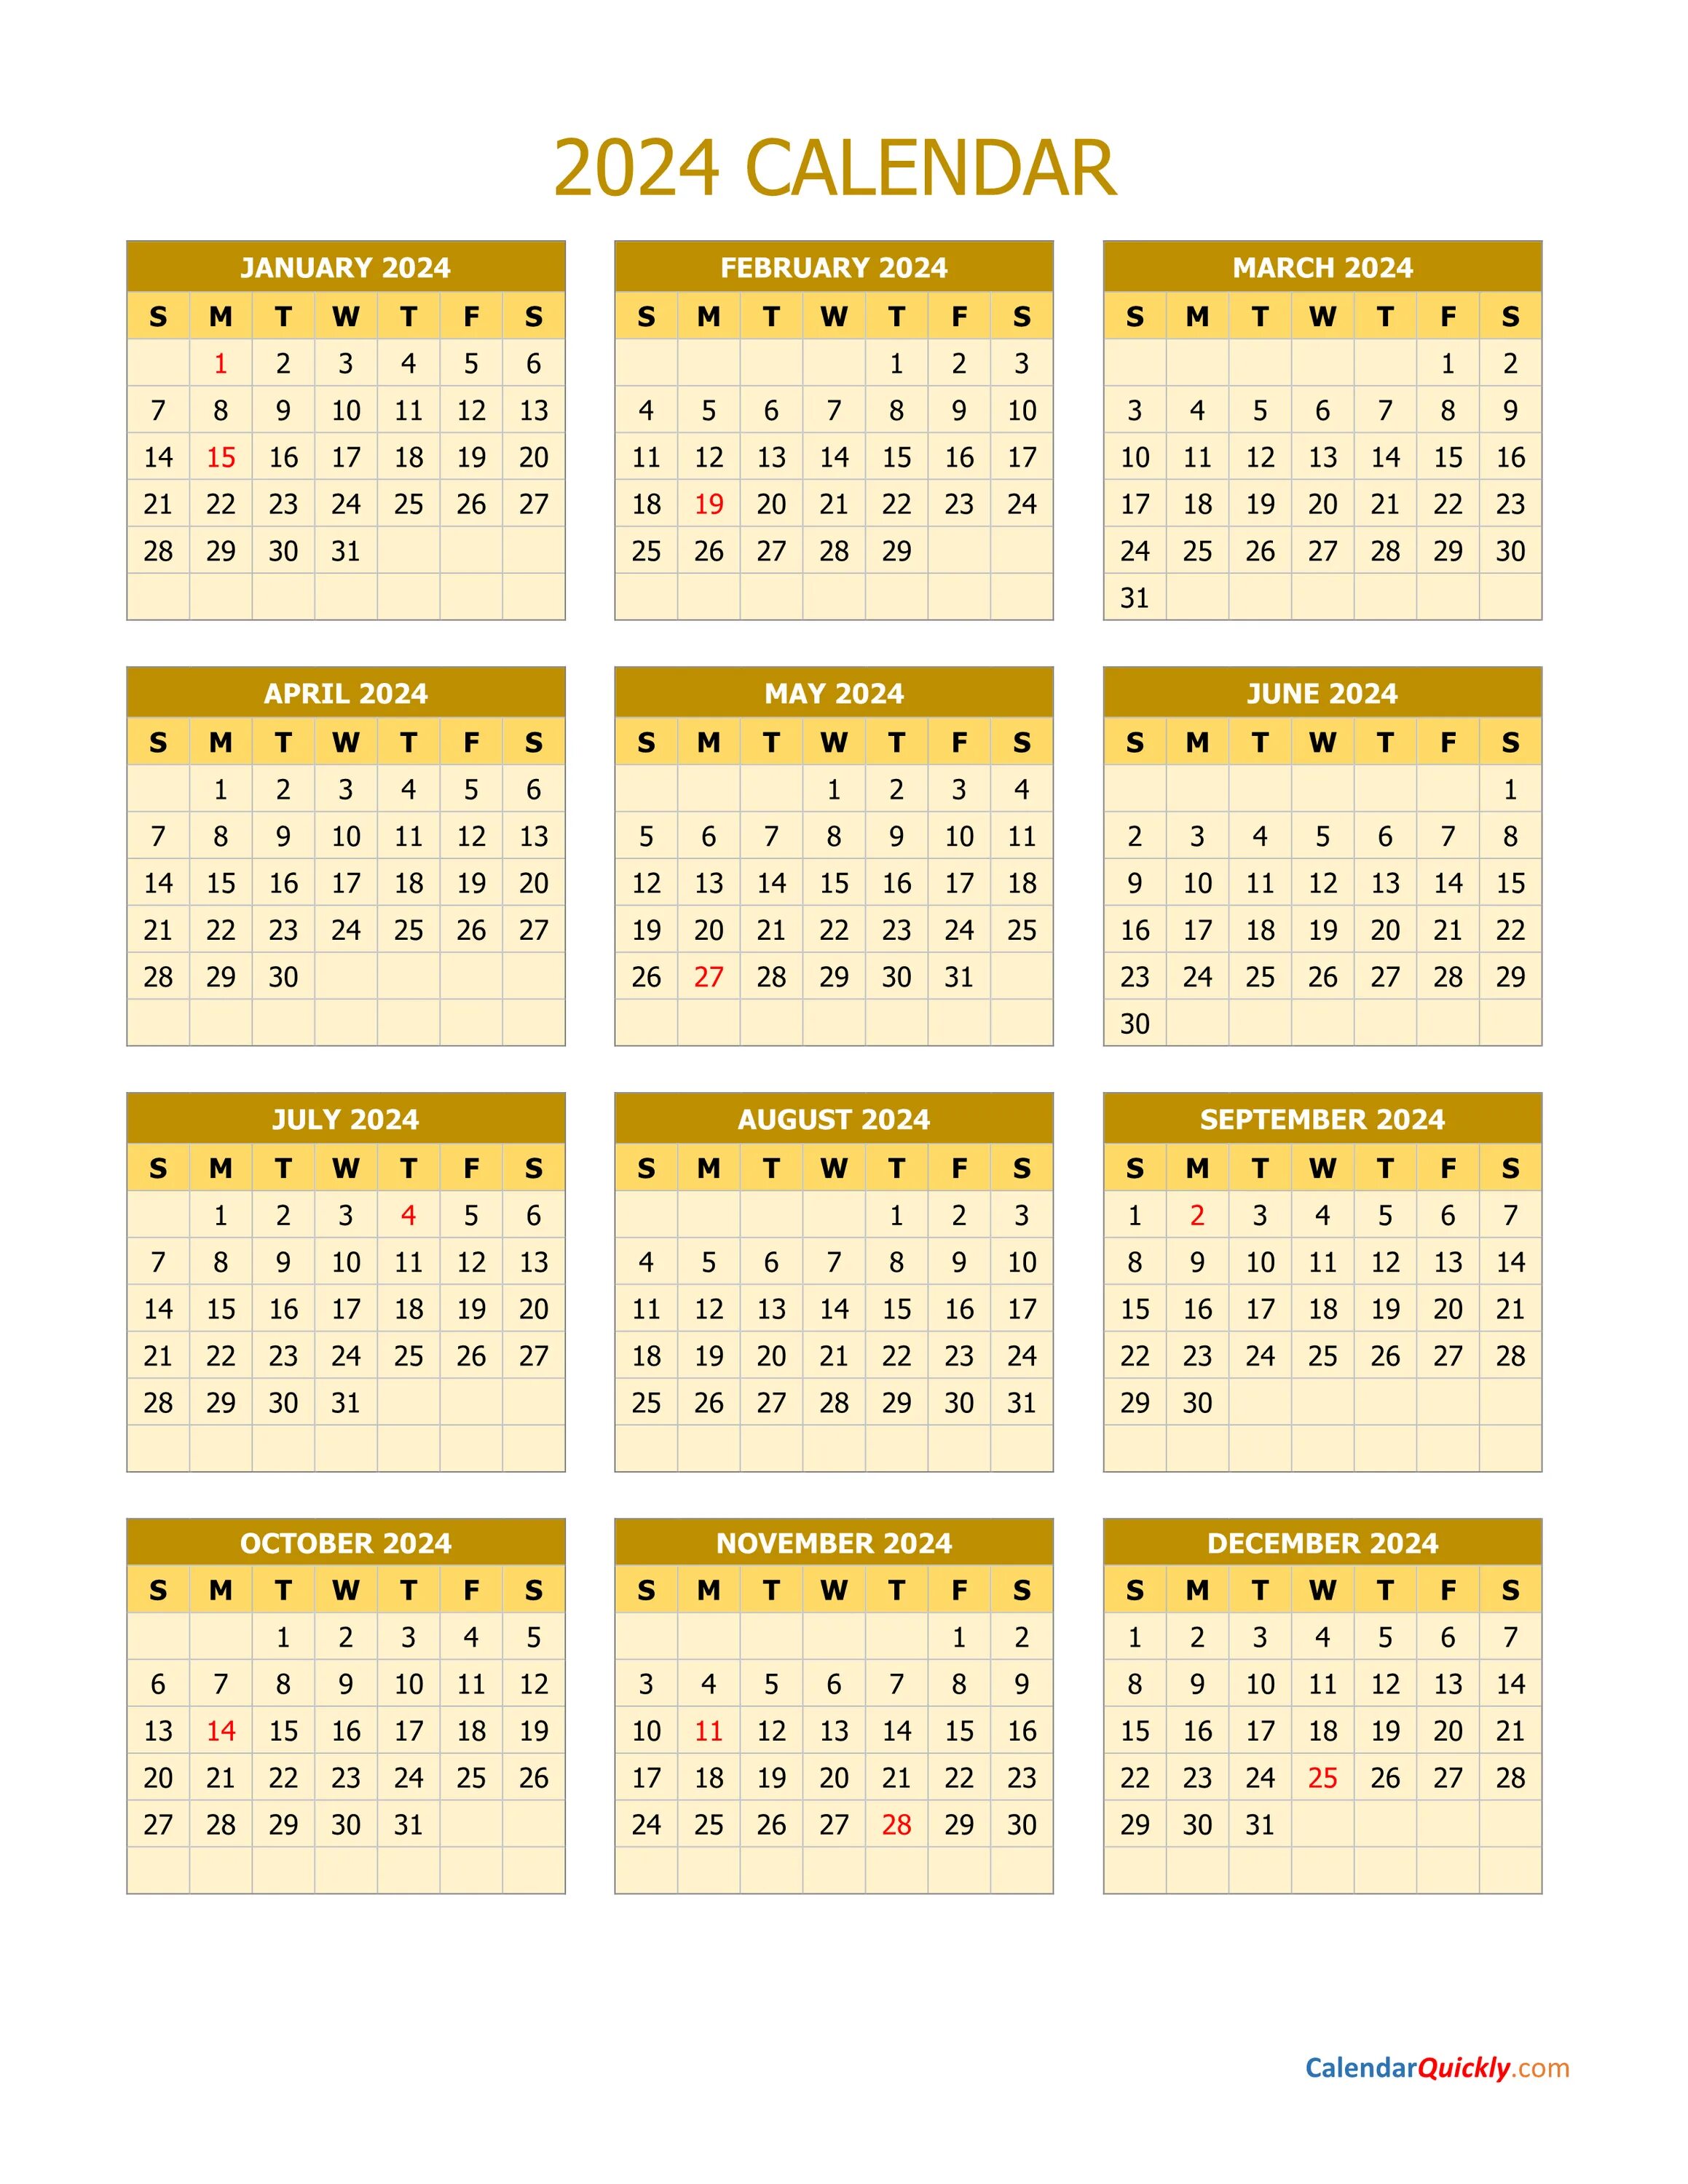 Календарь на 2024 год эксель. Календарь 2024. Календарь календарь 2024. Calenrad 2024. Kalindar 2024.